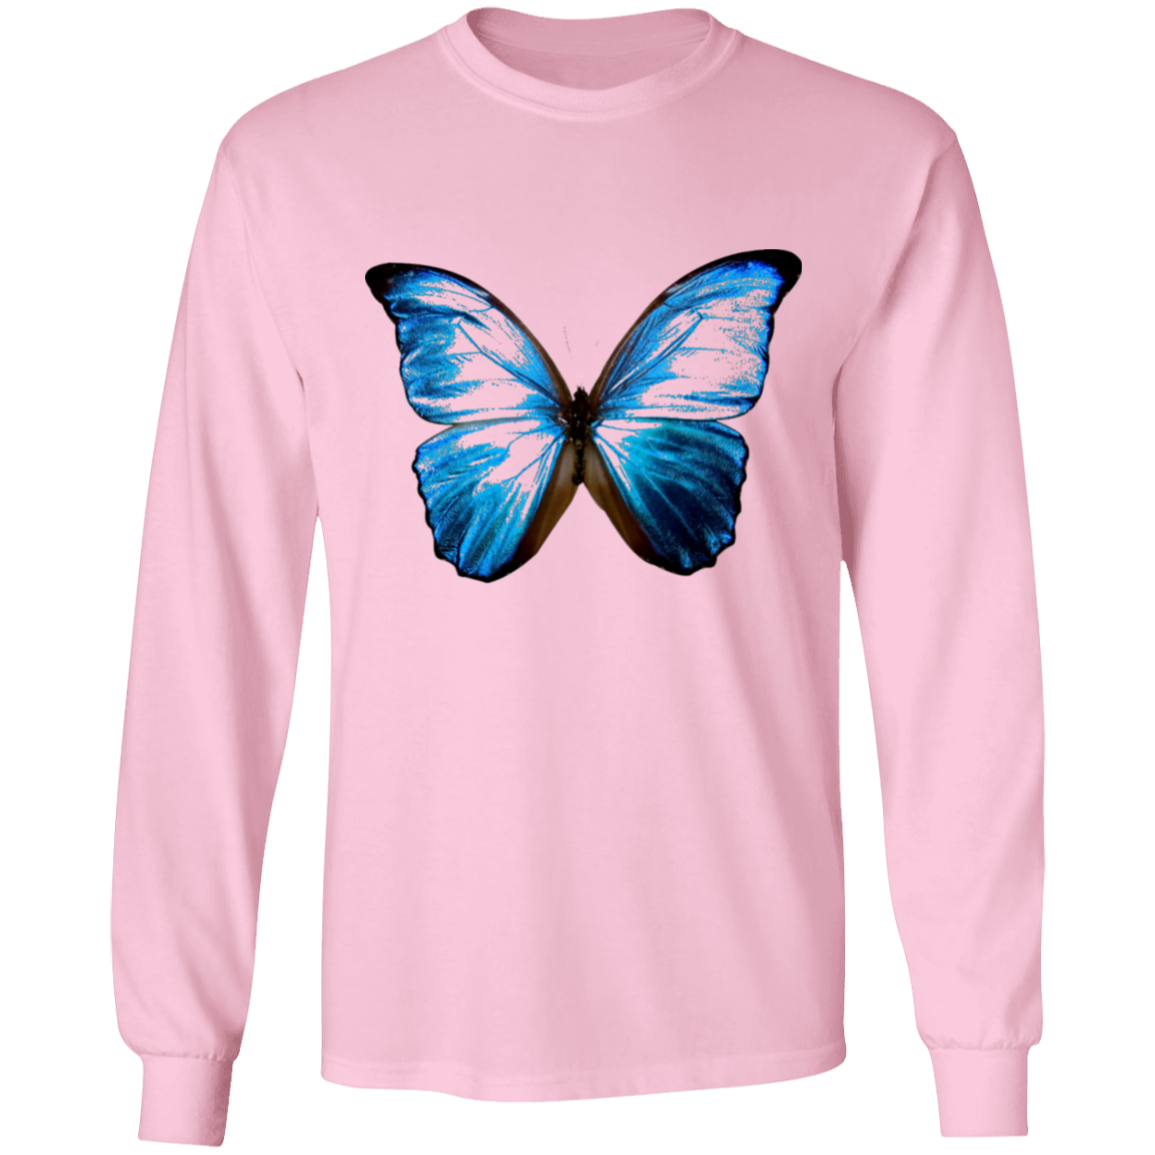 Butterfly (2) long sleeve T-shirt